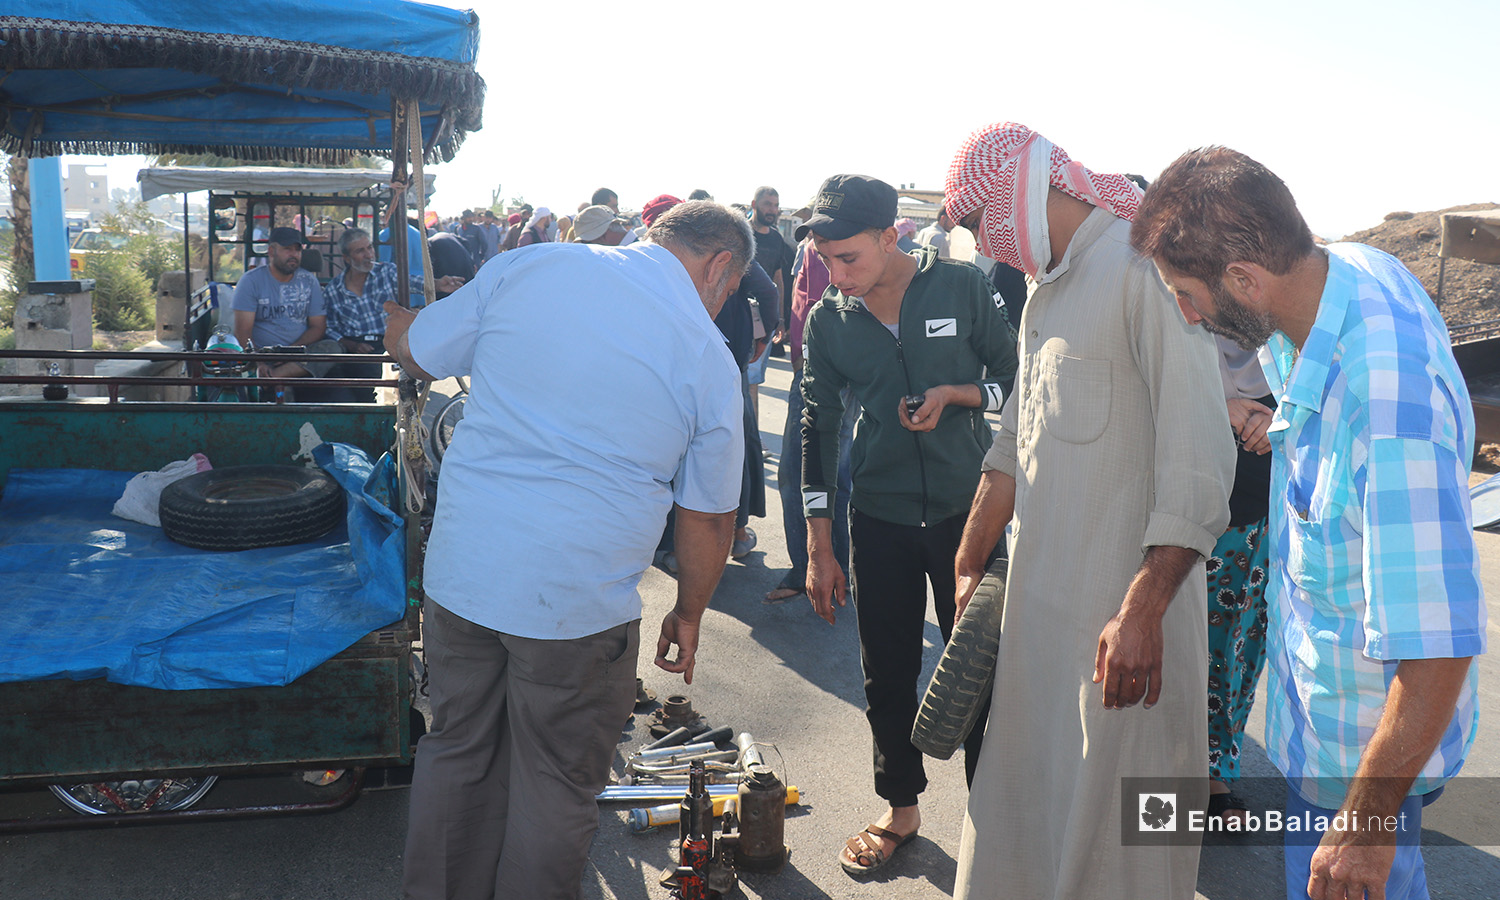 بيع الأدوات المستعملة في سوق الجمعة بمدينة الرقة - 8 آب 2020 (عنب بلدي/عبد العزيز الصالح)